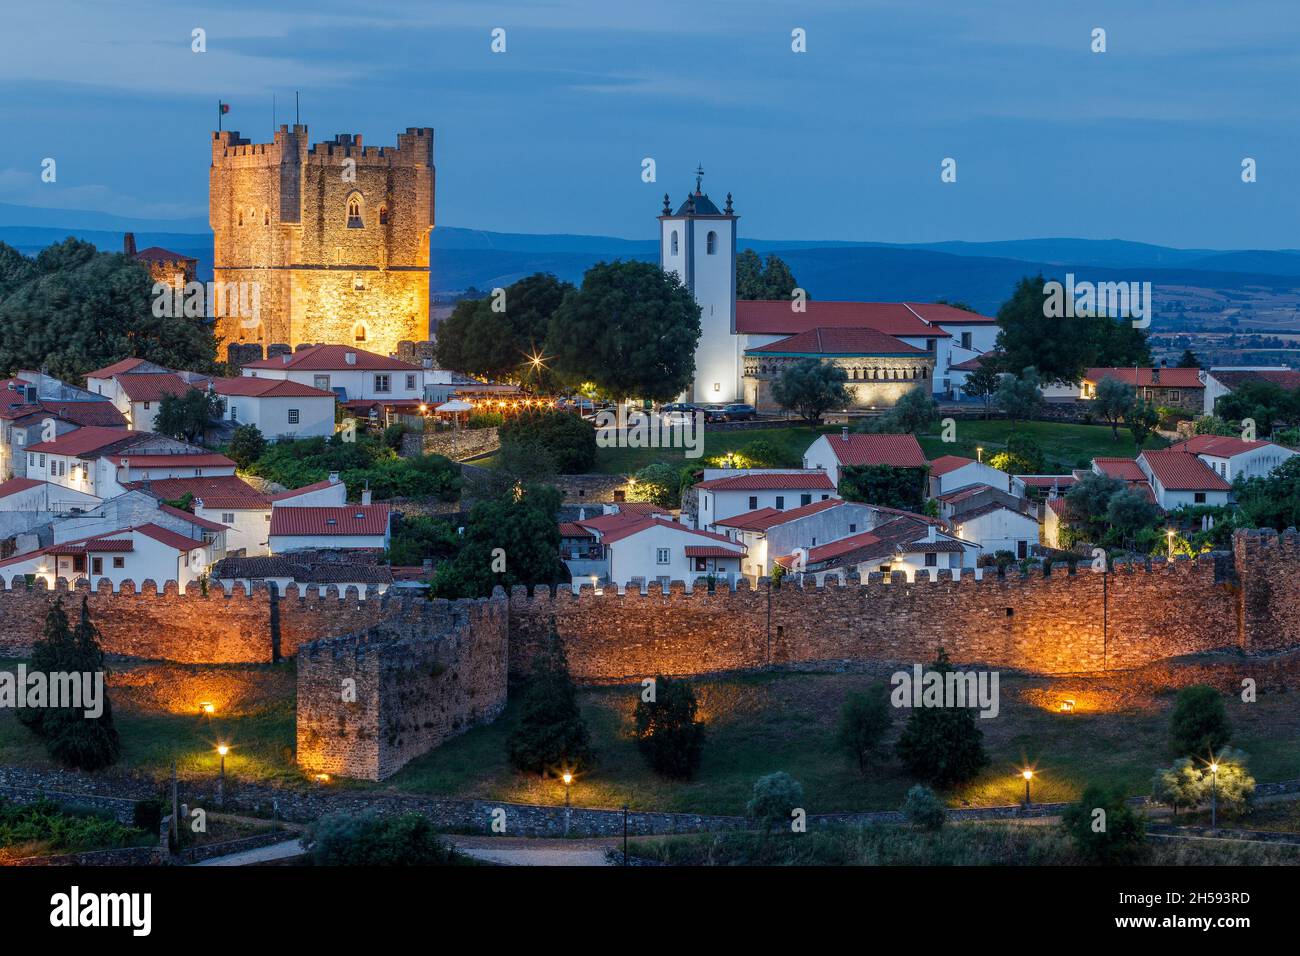 Bragana, Portogallo - 26 giugno 2021: Vista parziale, al crepuscolo, della cittadella medievale e del castello di Bragana in Portogallo. Foto Stock